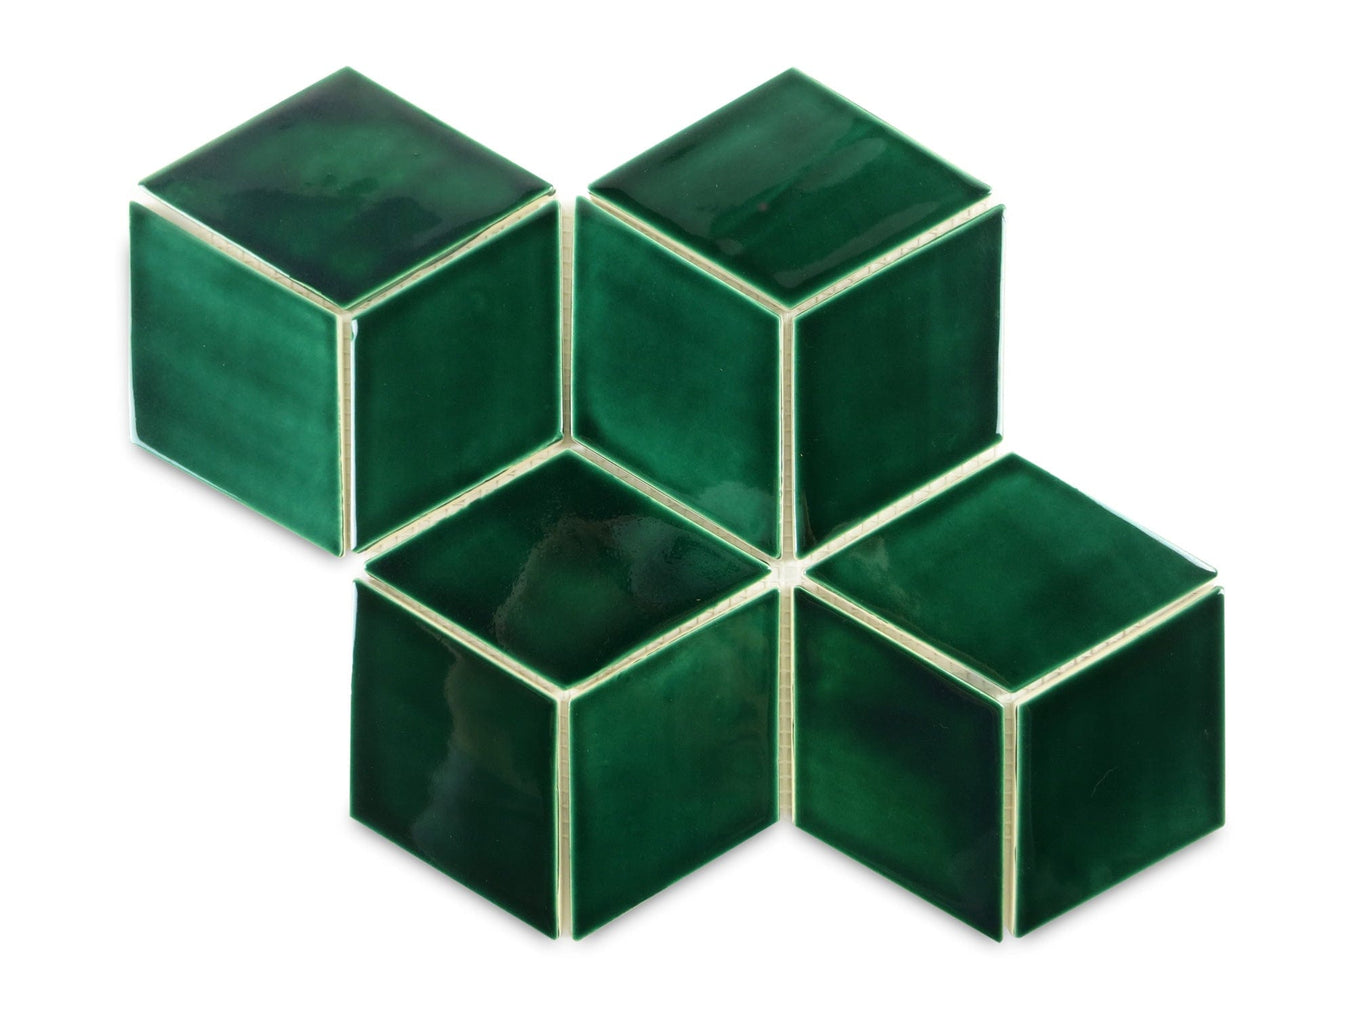 Emerald Green Brick  Jatana Interiors Tiles